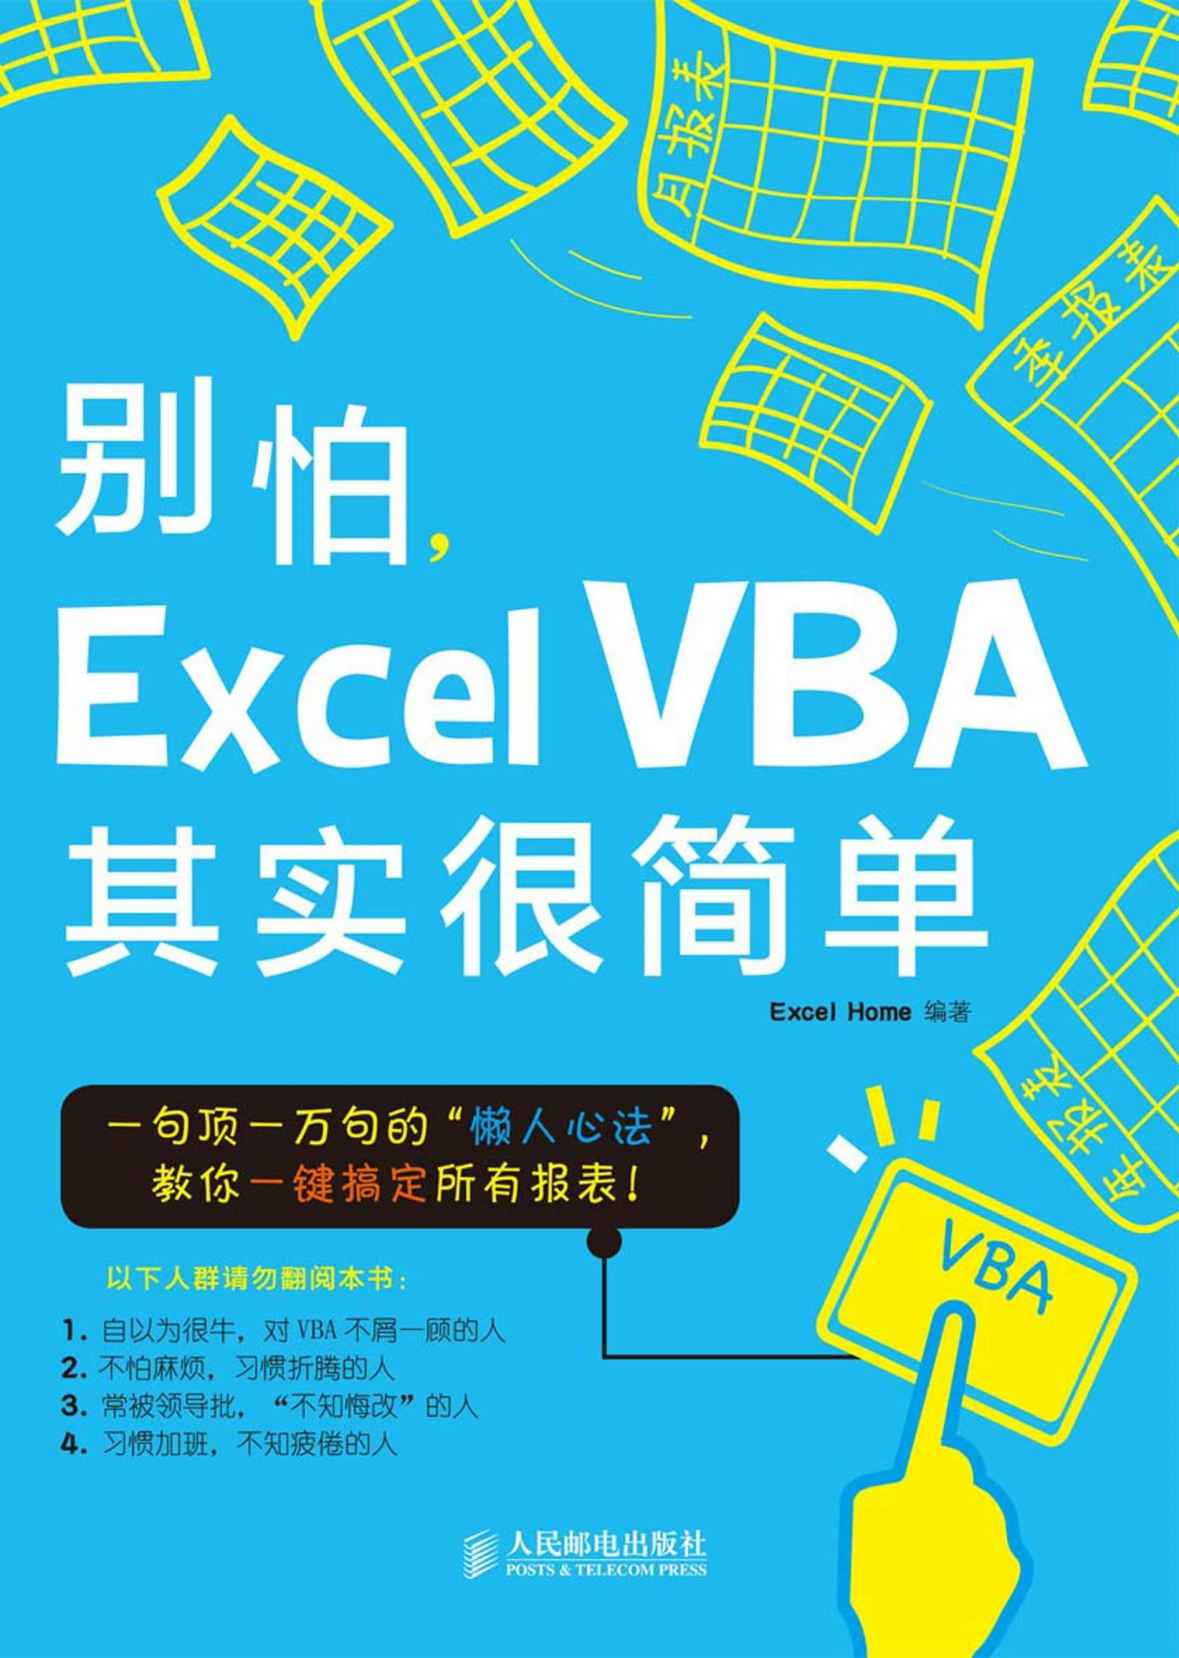 O,Excel VBA² (ʭ)